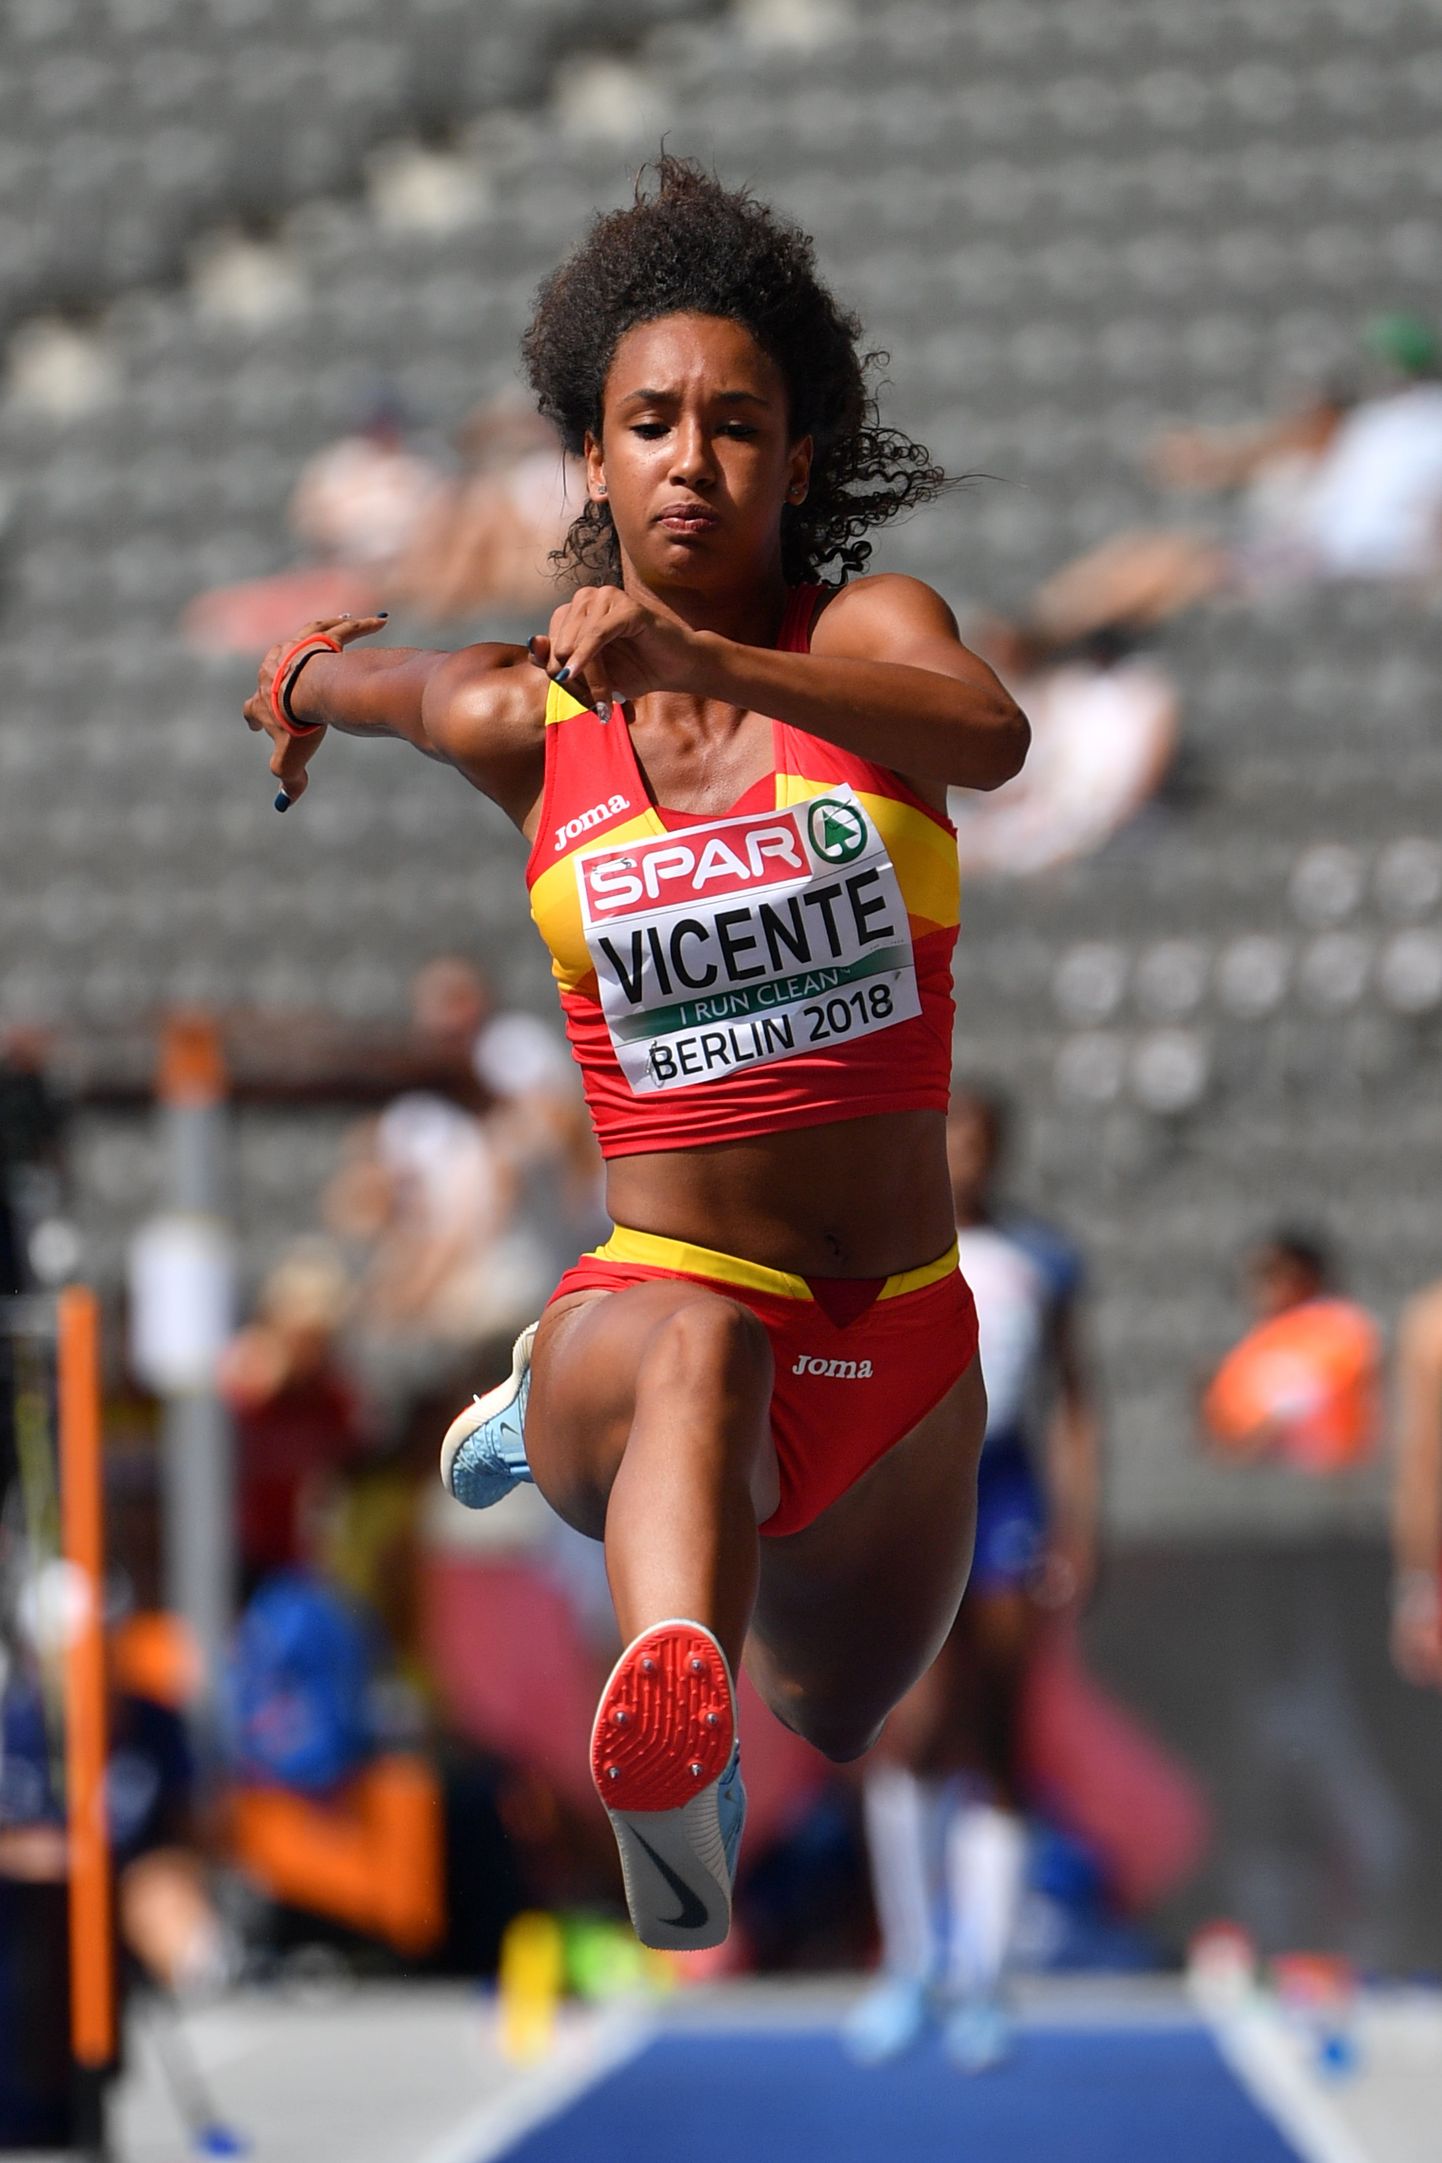 Maria Vicente on noorte klassides võitnud tiitlivõistluste medaleid nii kolmikhüppes kui ka seitsmevõistluses.